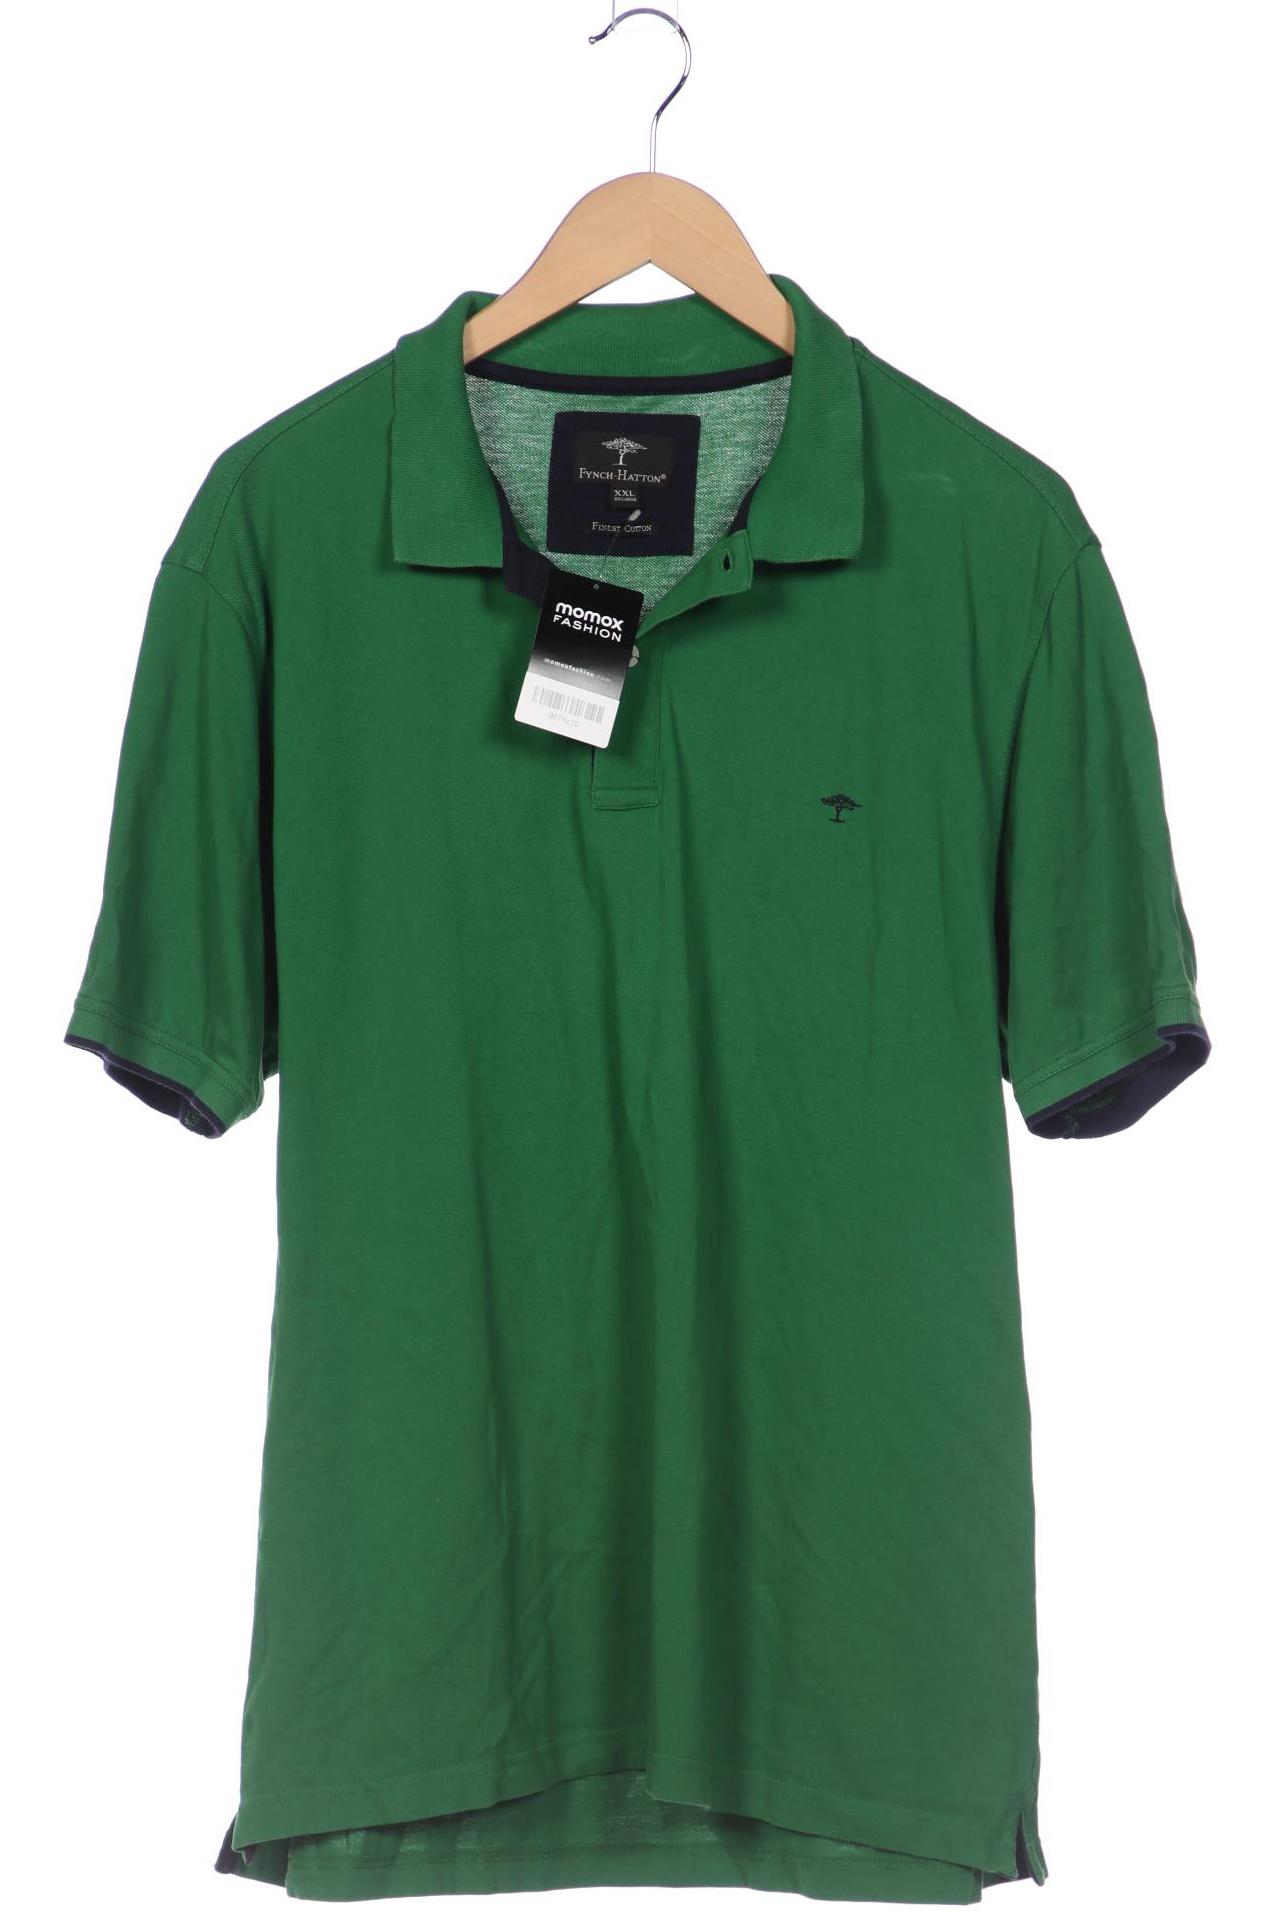 Fynch Hatton Herren Poloshirt, grün von Fynch Hatton